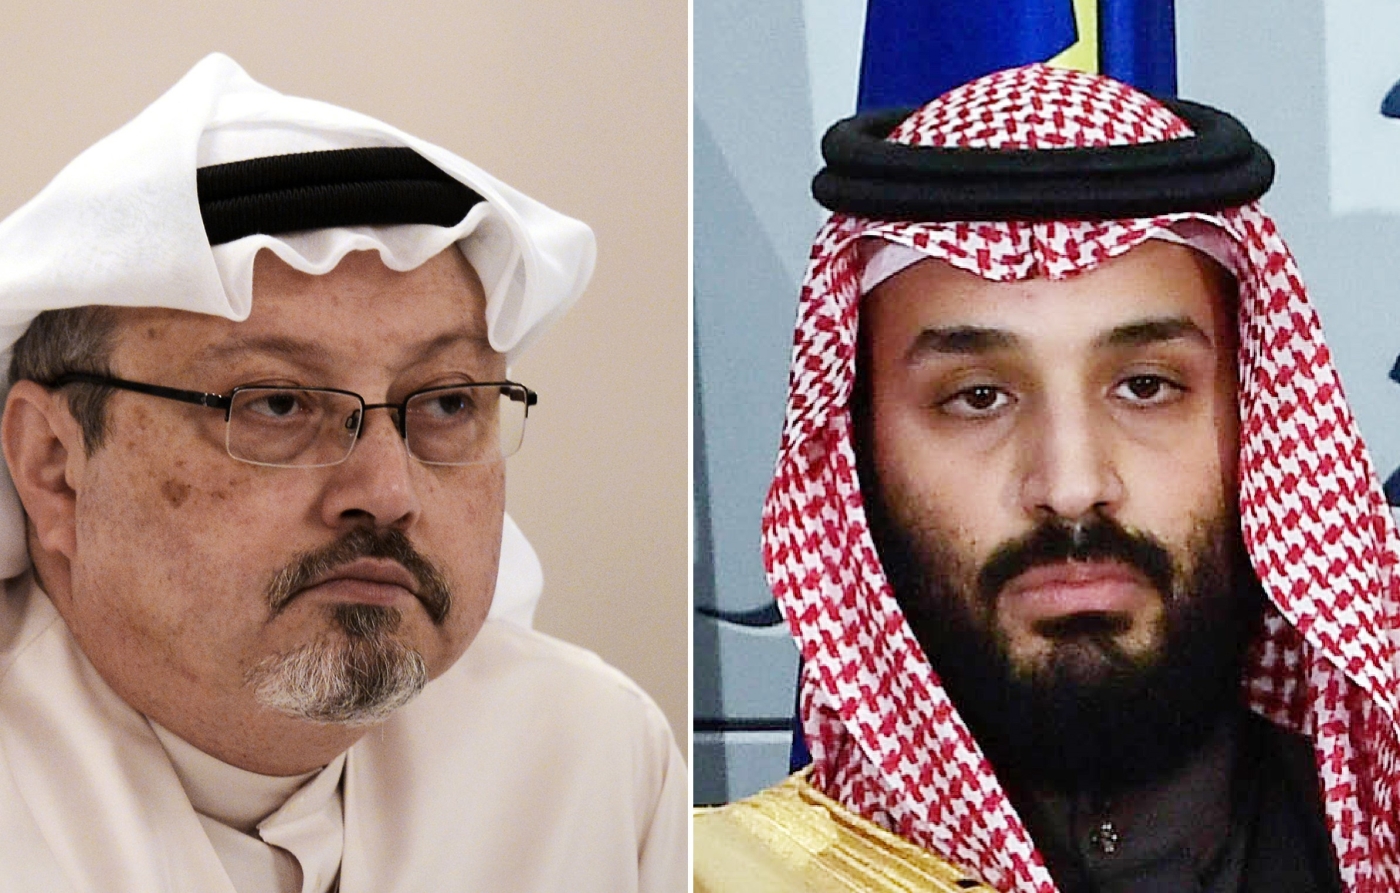 A year after Khashoggi's murder, Mohammed bin Salman still evades justice |  Middle East Eye